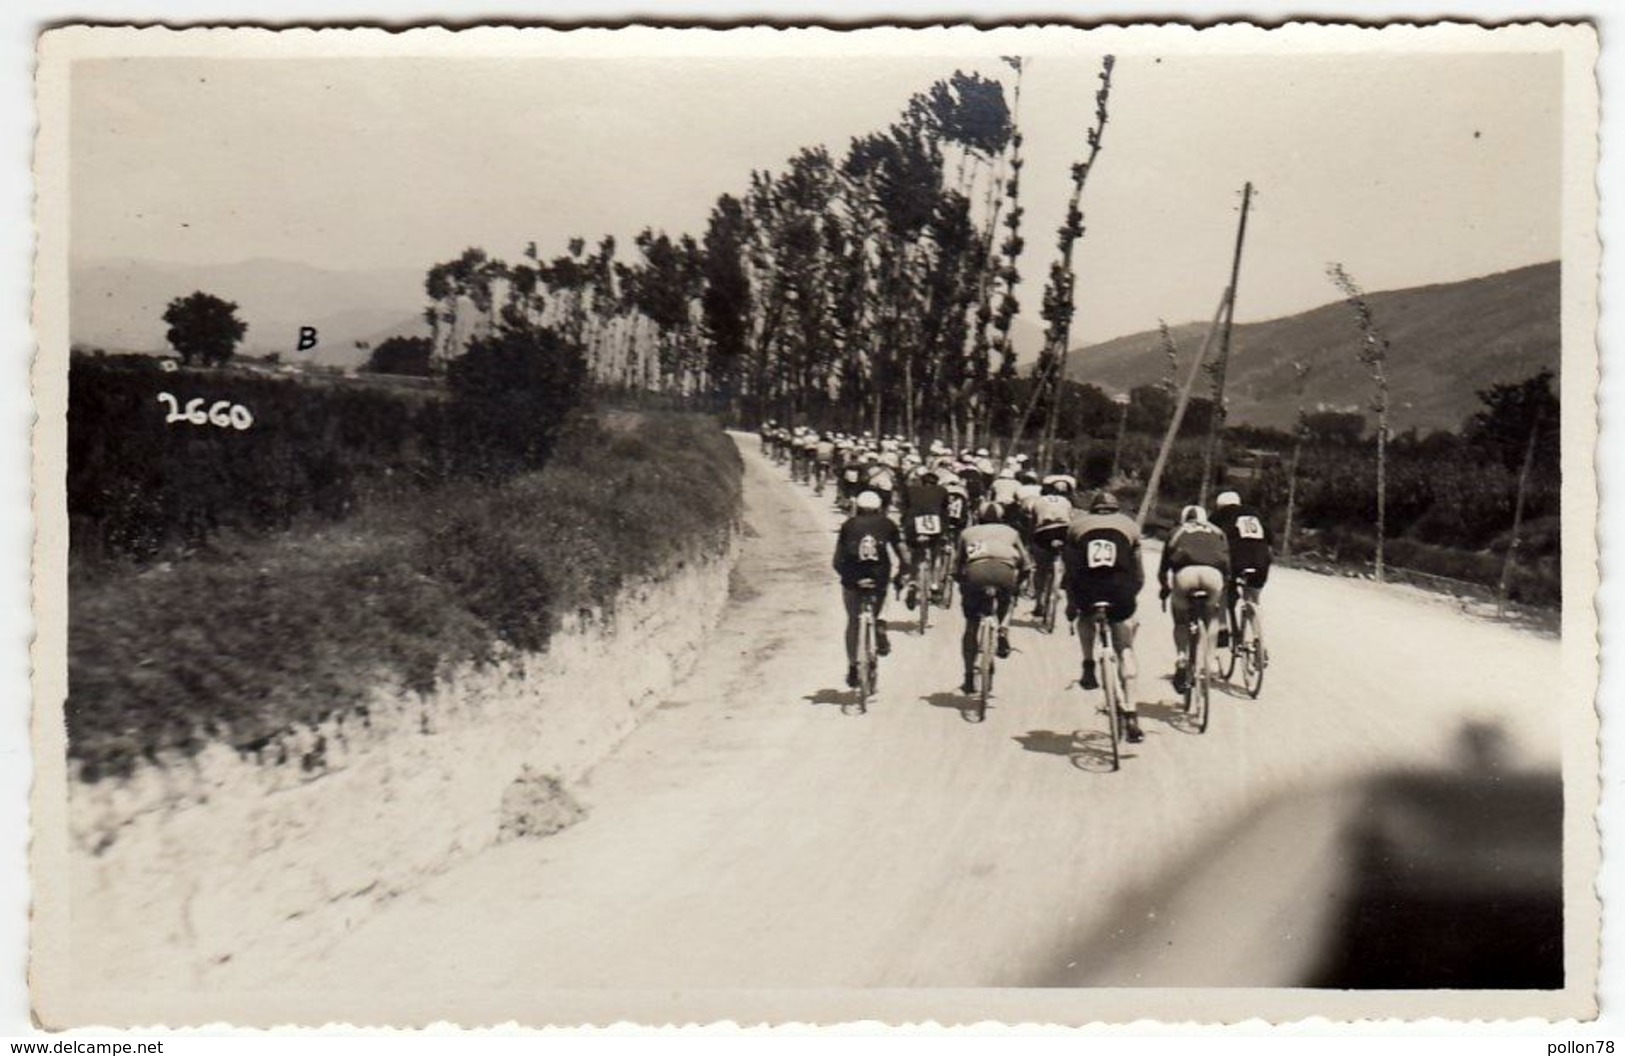 FOTOGRAFIA - CICLISMO - CORSA CICLISTICA - 1933 - LUOGO DA CLASSIFICARE - Vedi Retro - Ciclismo